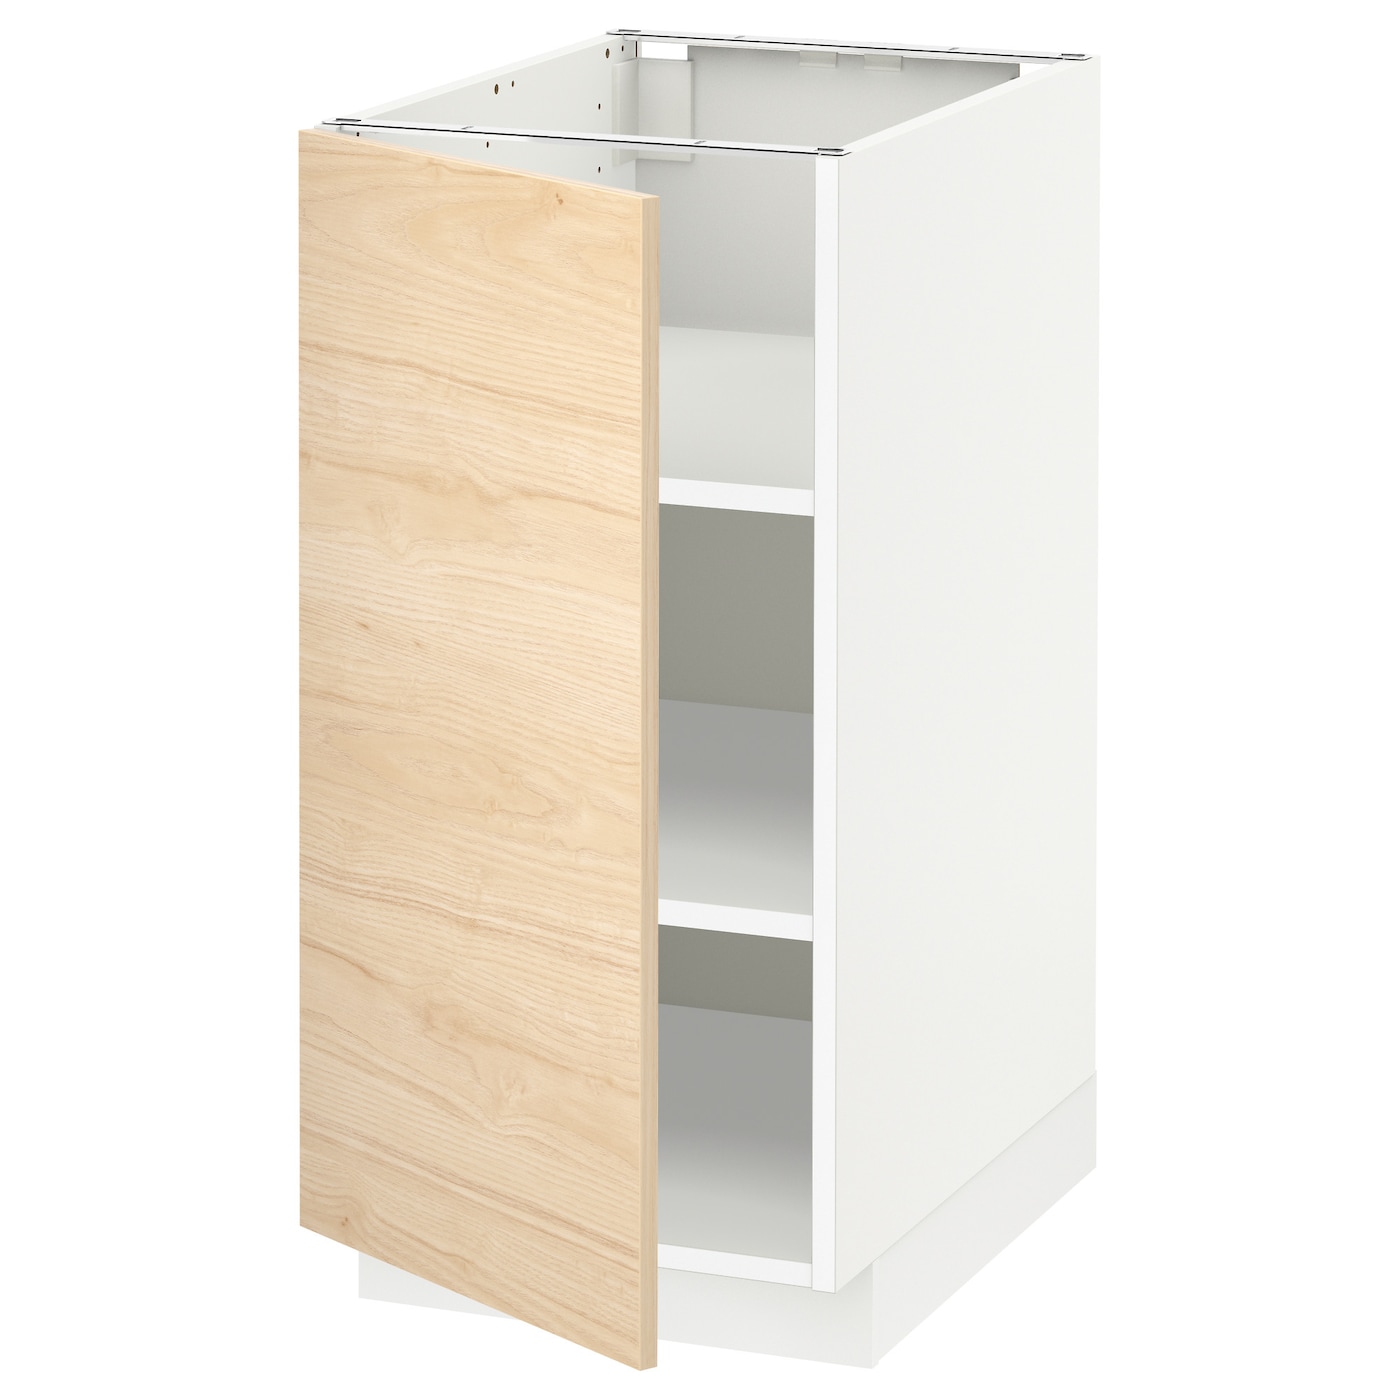 Напольный шкаф - IKEA METOD, 88x40x62см, белый/светлый ясень, МЕТОД ИКЕА